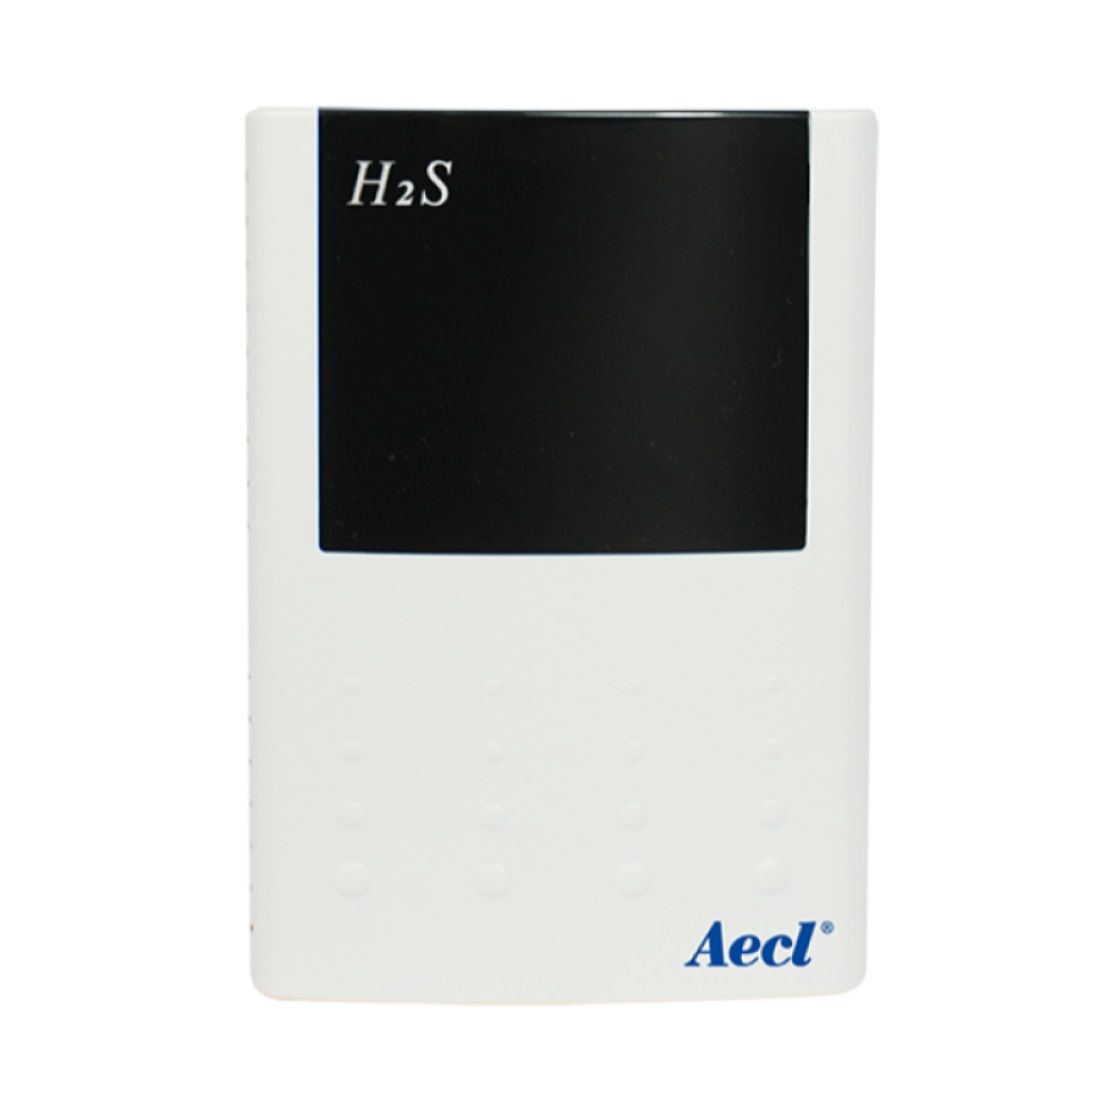 Solução de sensoriamento sem fio para monitoramento ambiental de H2S.